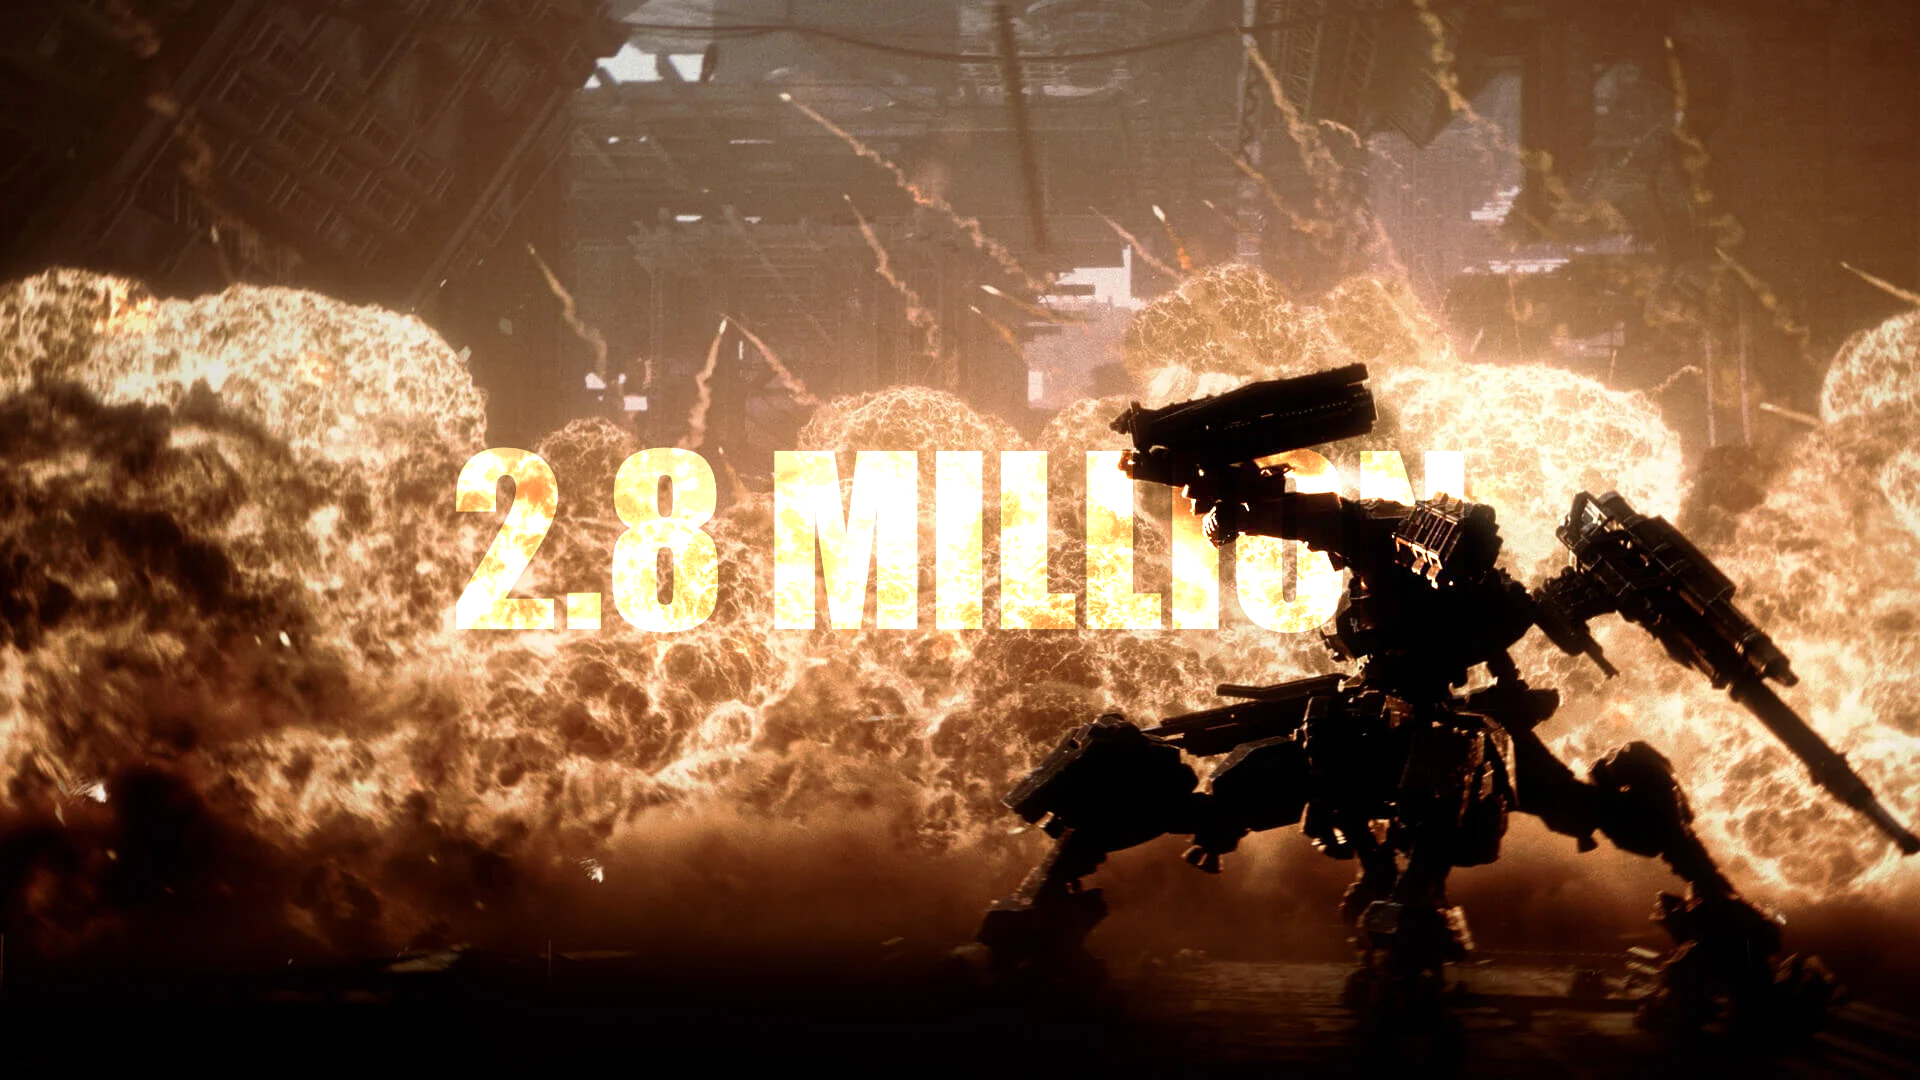 Armored Core VI surpasses 2.8 million copies sold